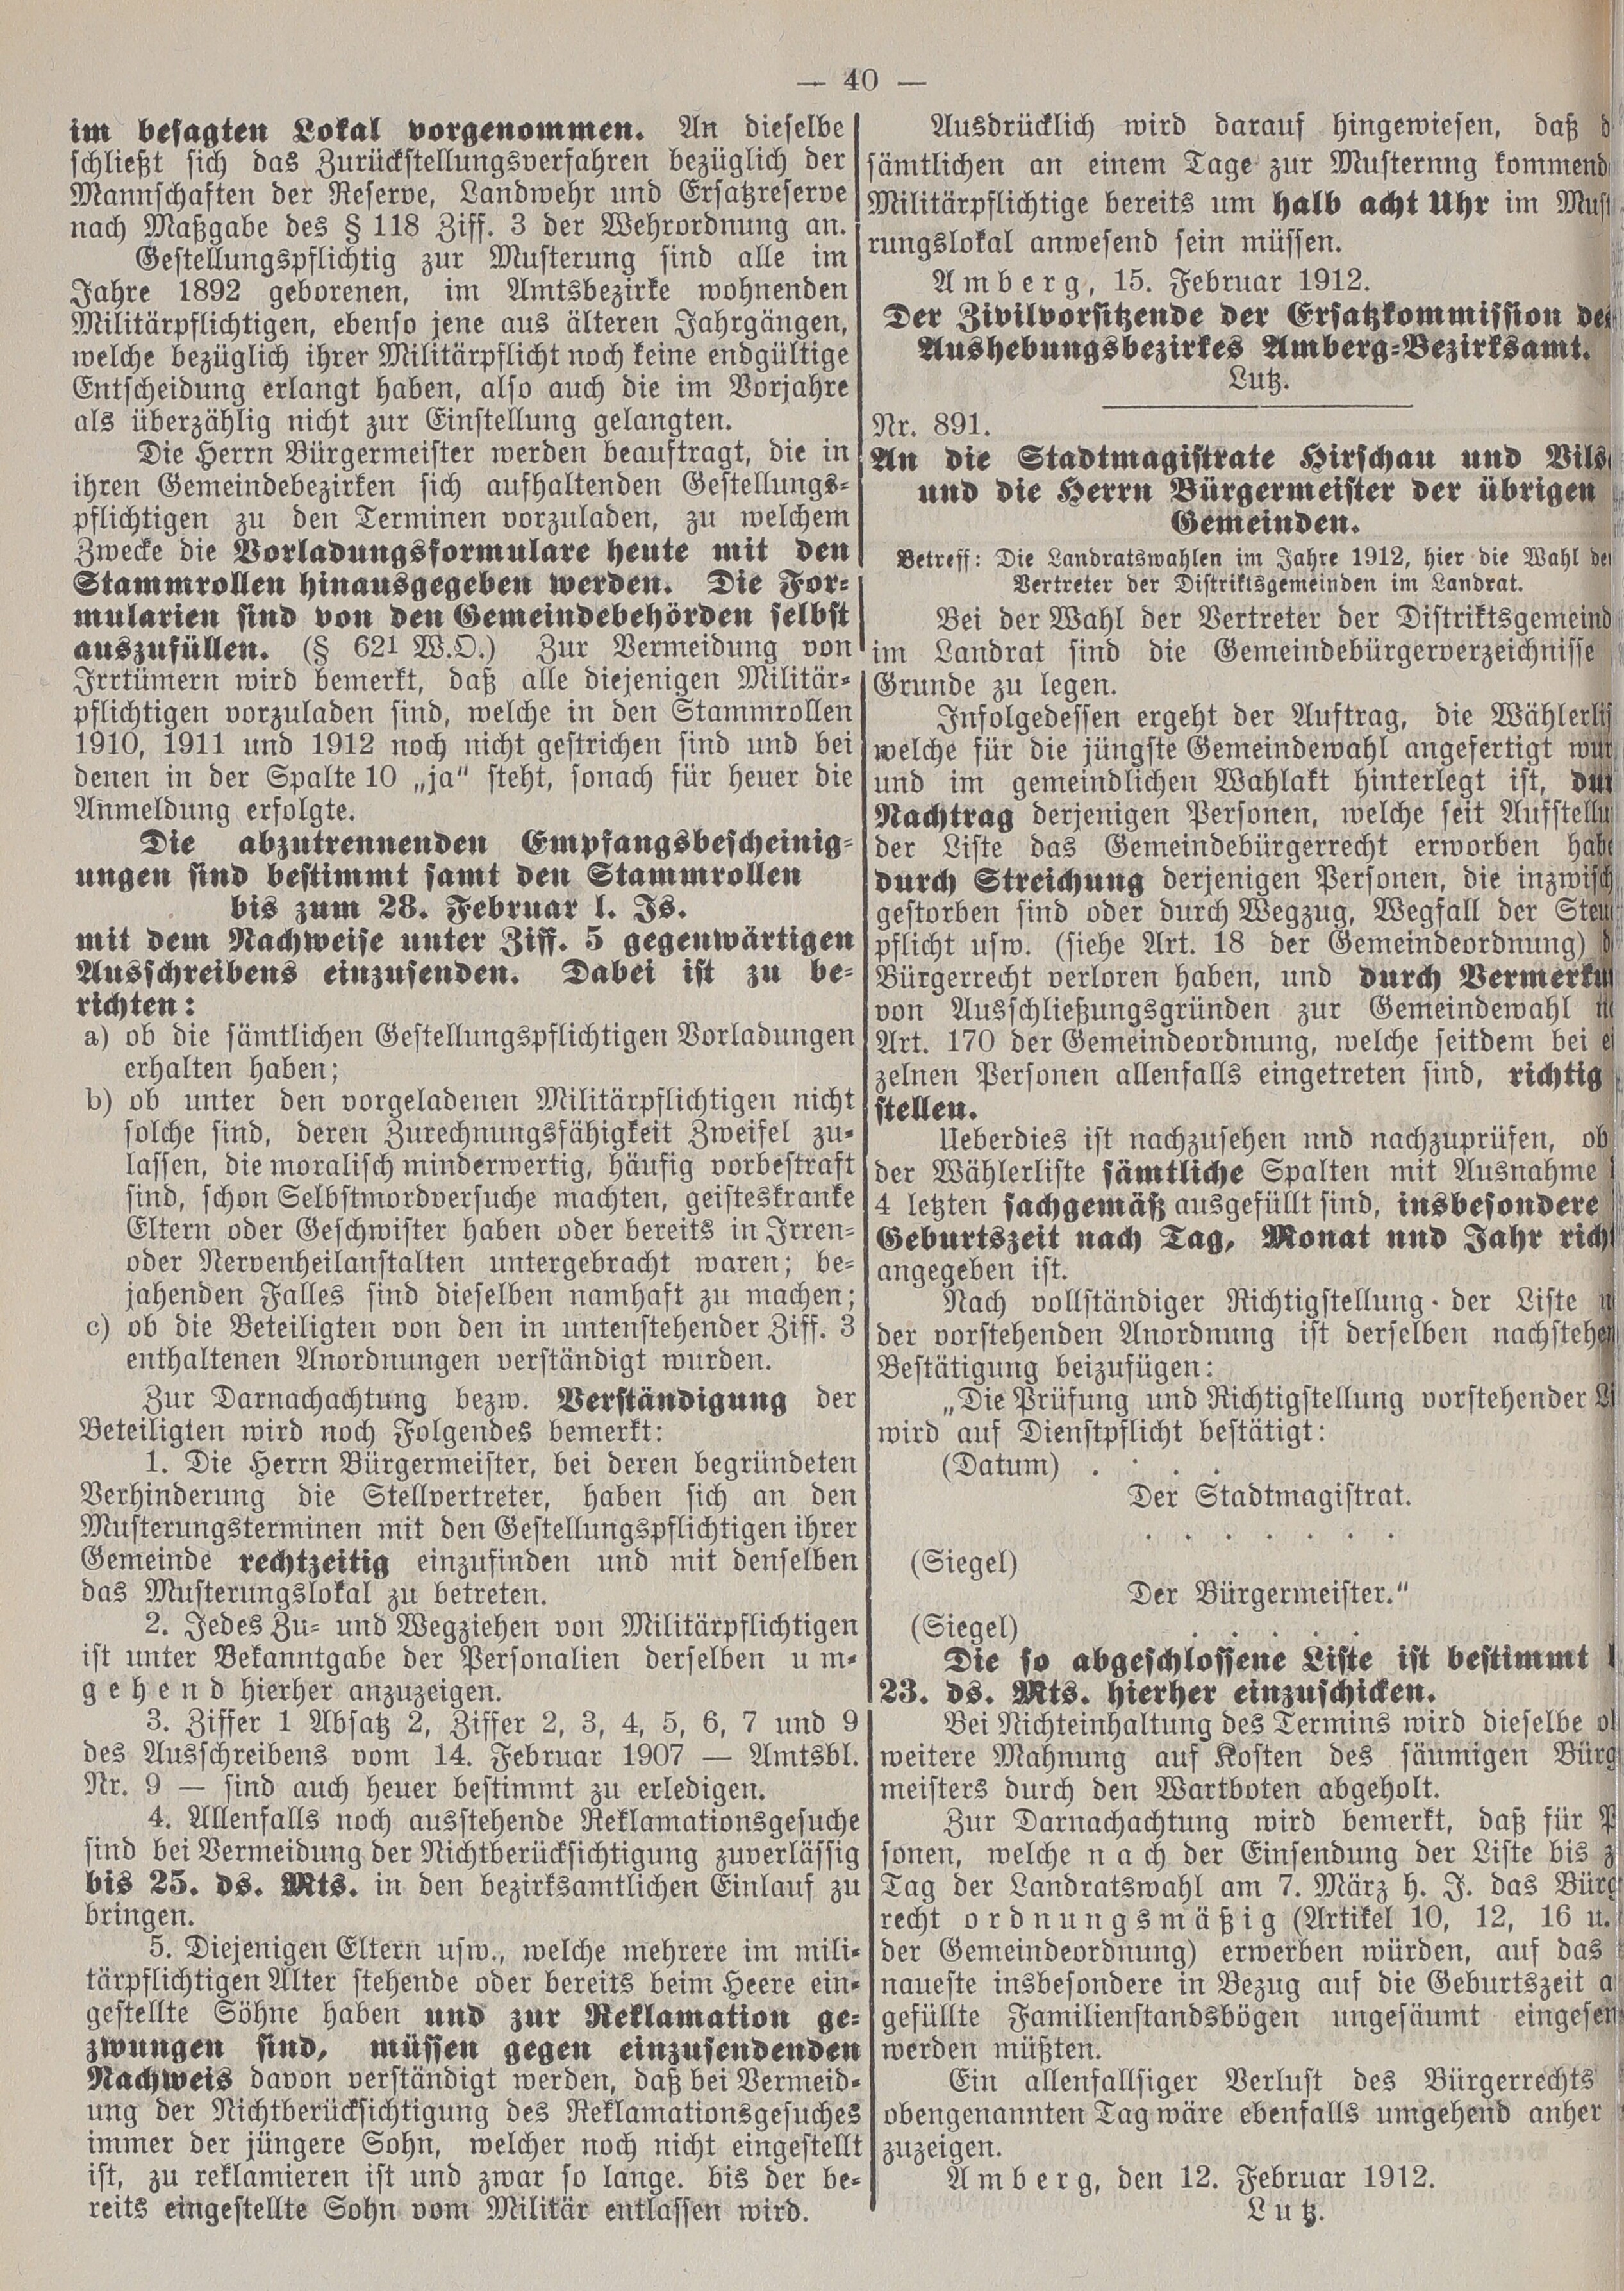 2. amtsblatt-amberg-1912-02-17-n10_3090